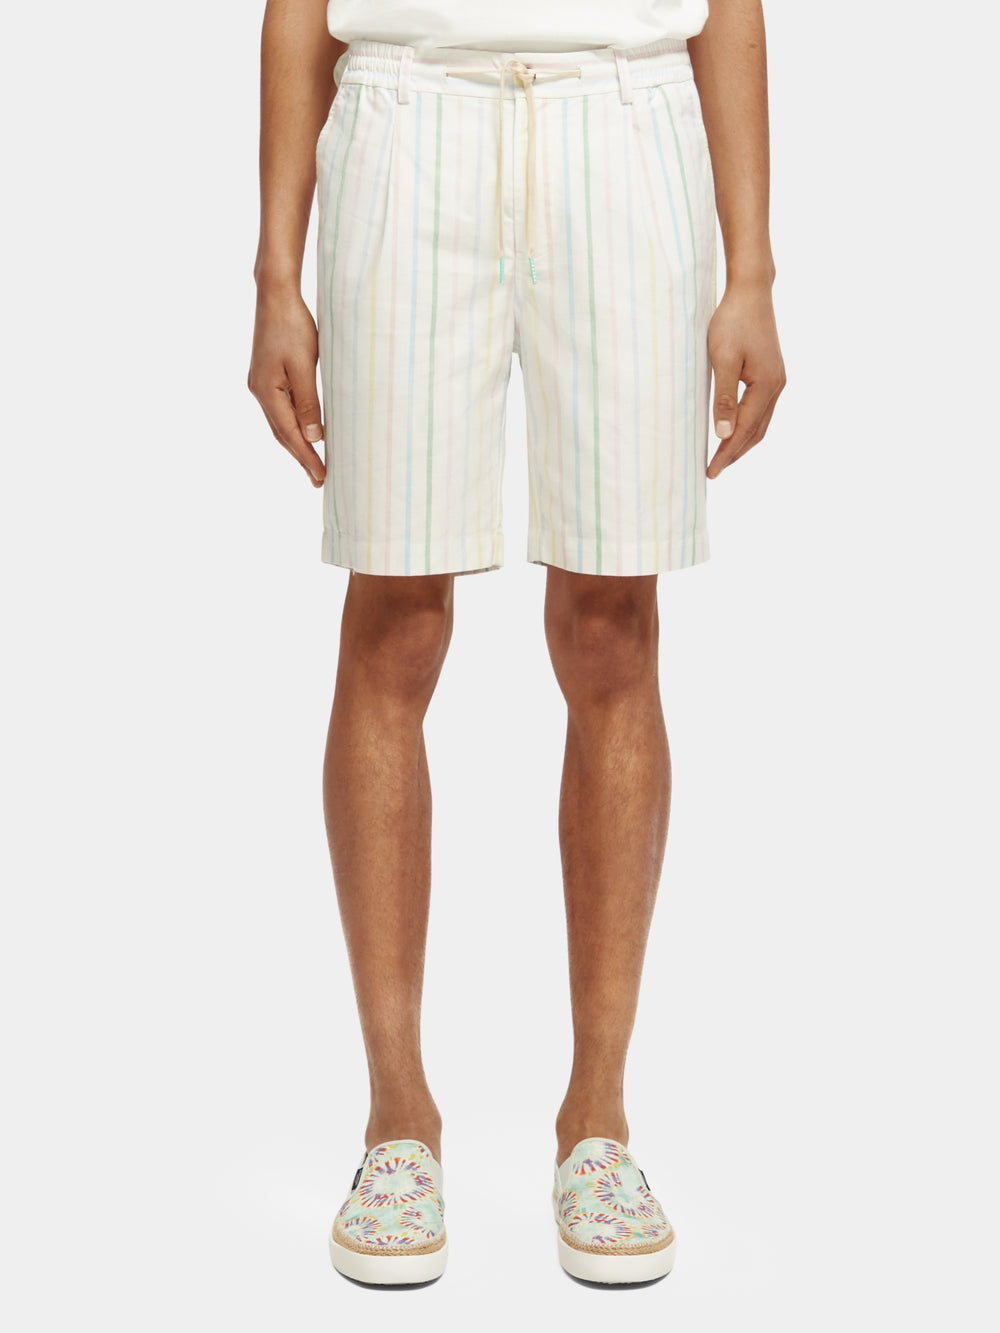 Blake striped Bermuda shorts - Scotch & Soda AU